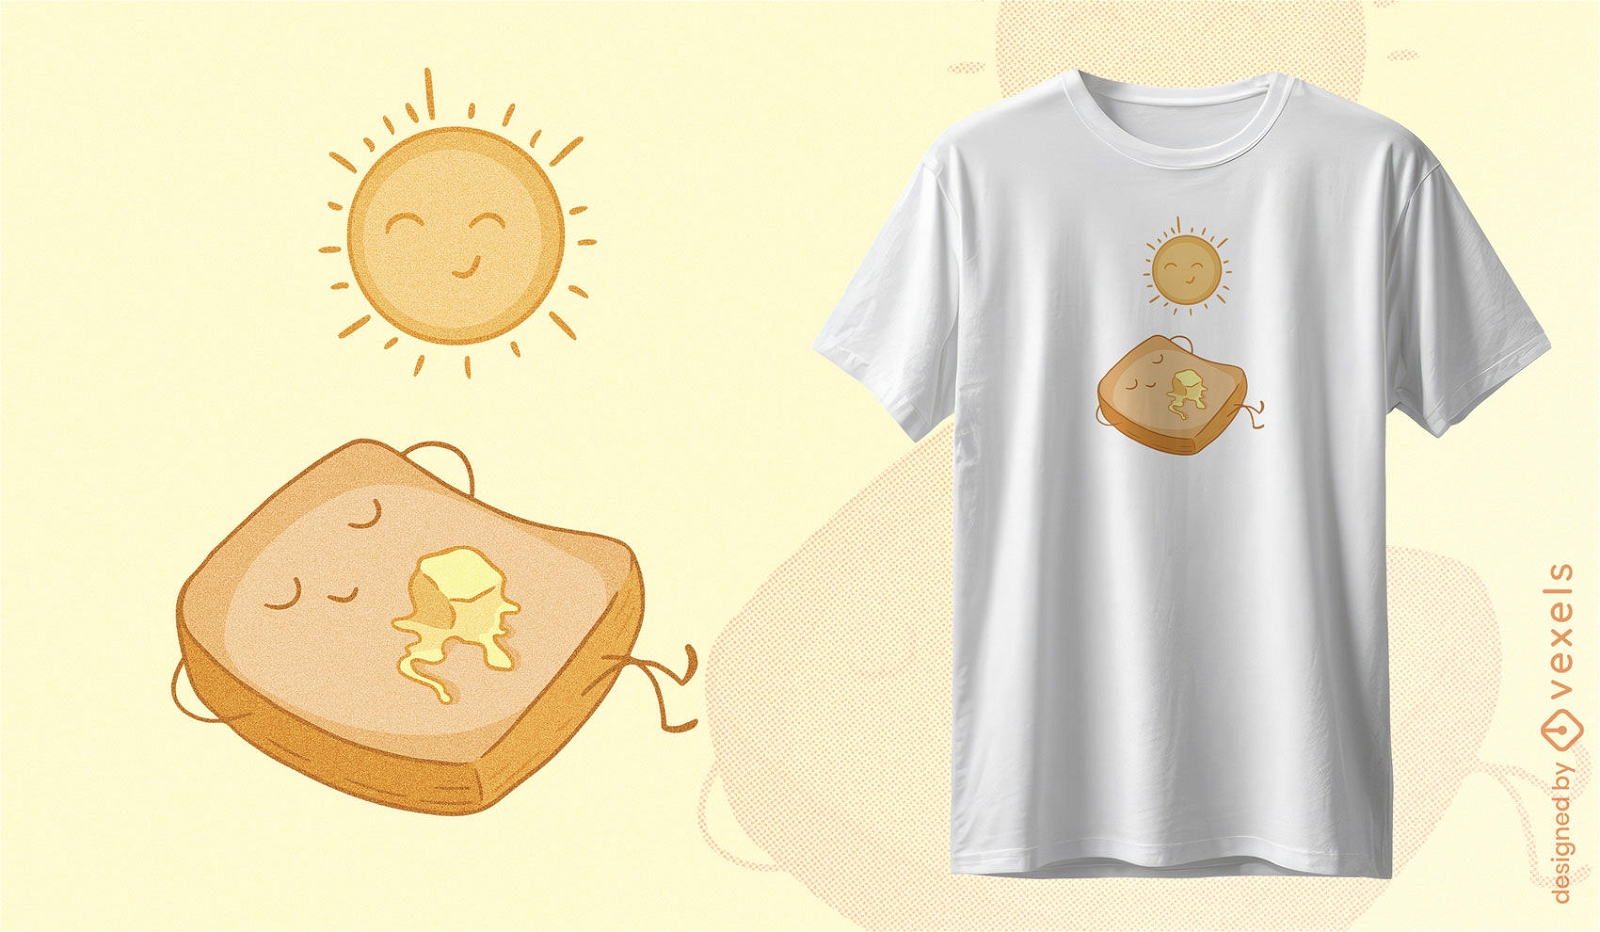 T-Shirt-Design mit Toast- und Sonnencharakteren